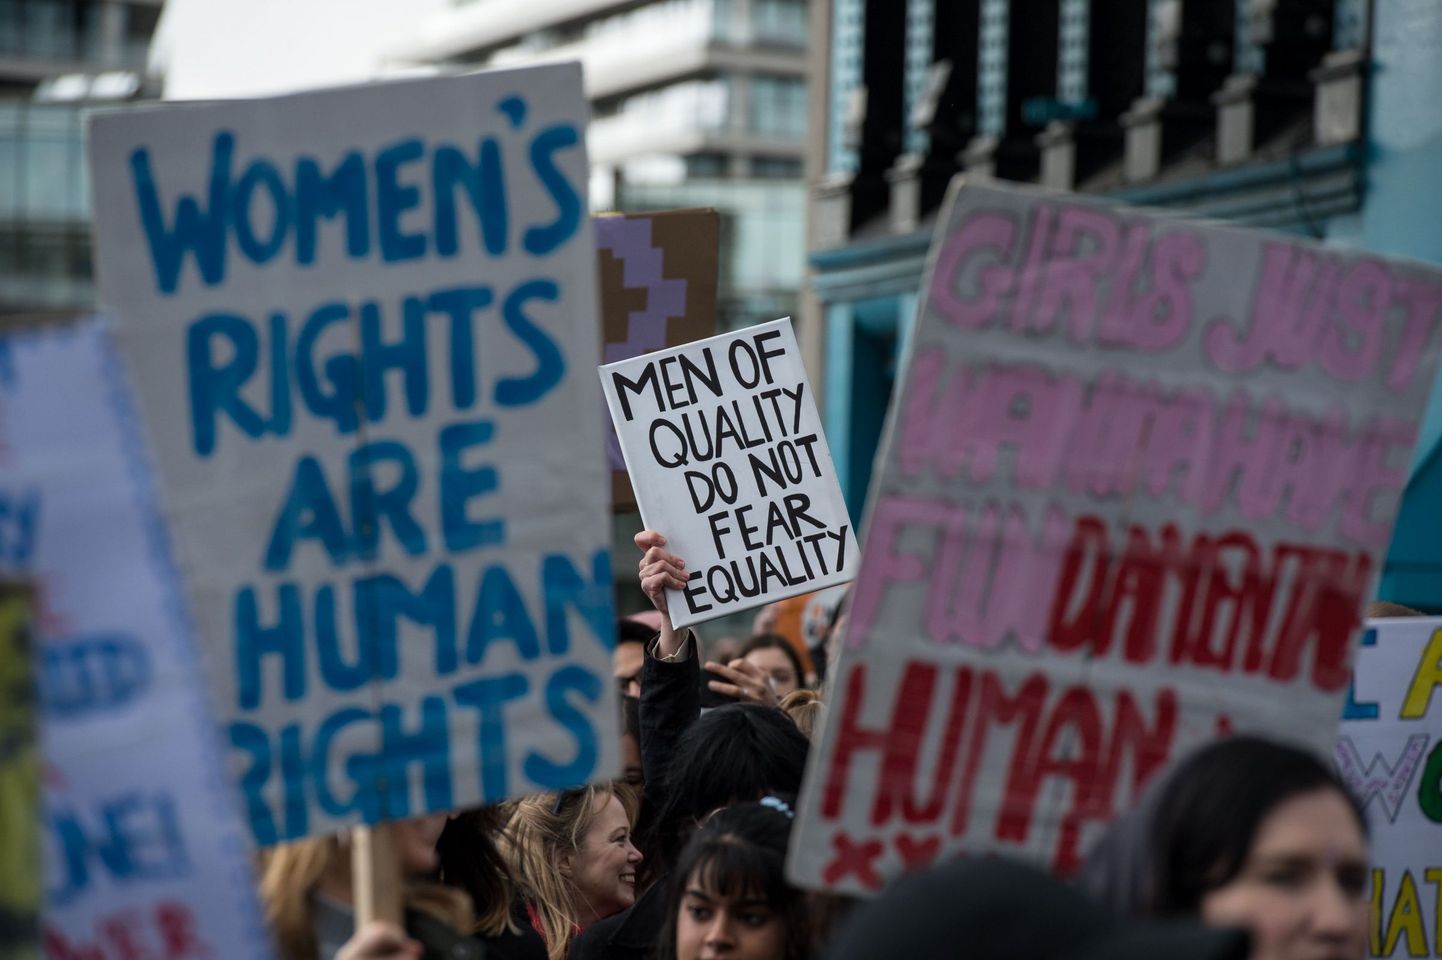 Inimesed Londonis soolise võrdõiguslikkuse kaitseks toimunud meeleavaldusel.